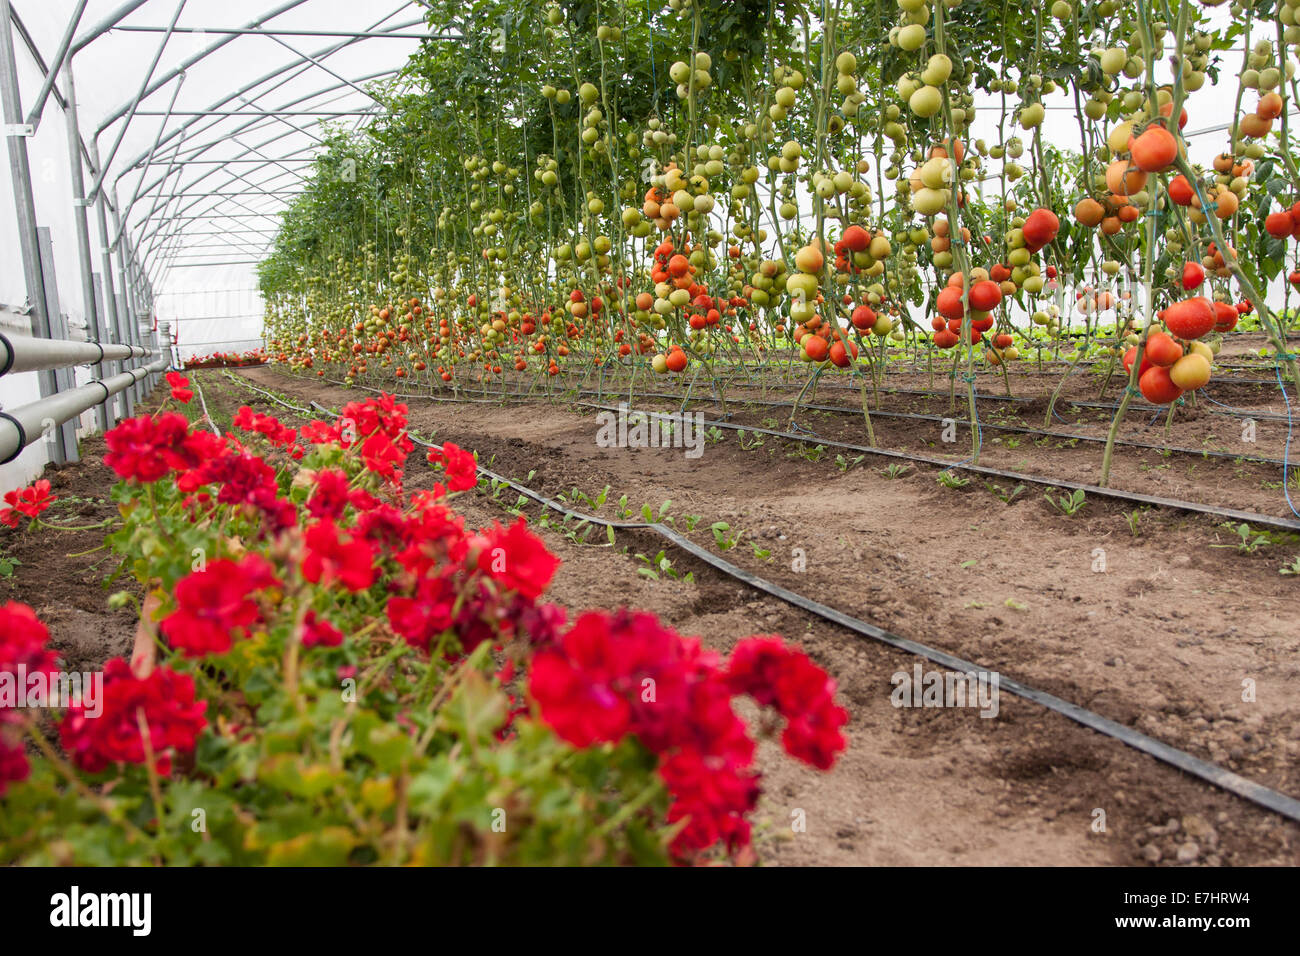 Un montón de tomates rojos en un invernadero Foto de stock